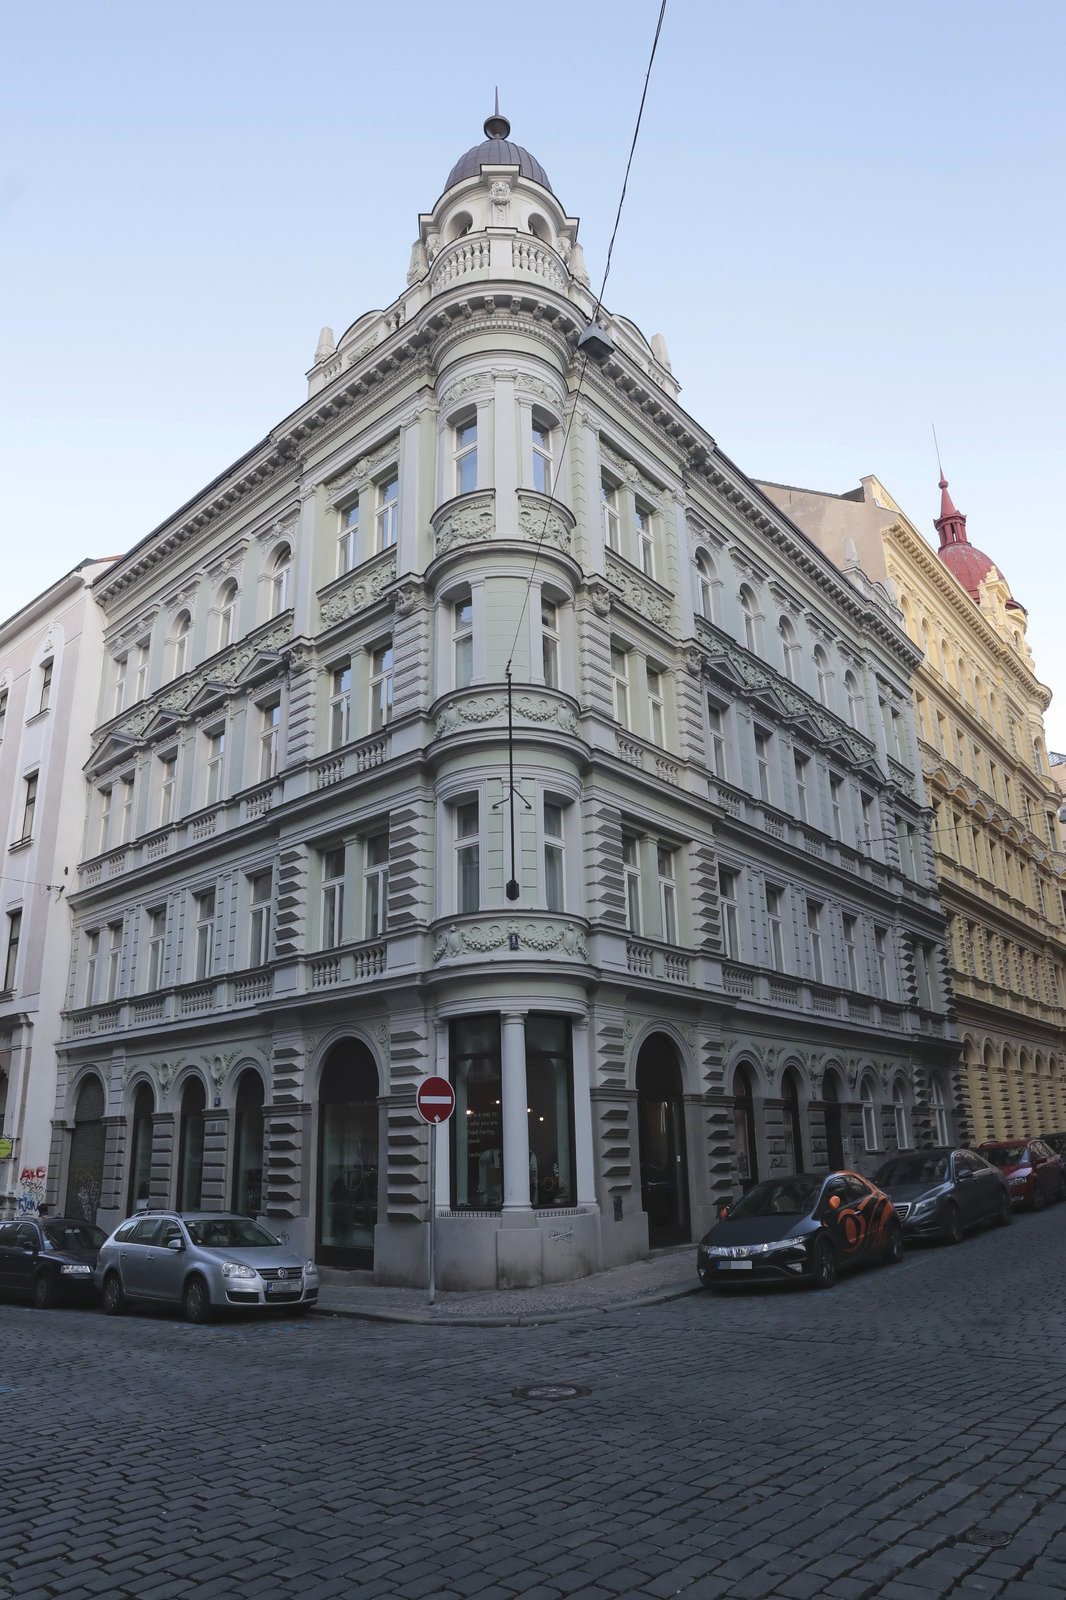 Hanzlíkův byt v Řeznické ulici (cca 8 000 000 Kč)